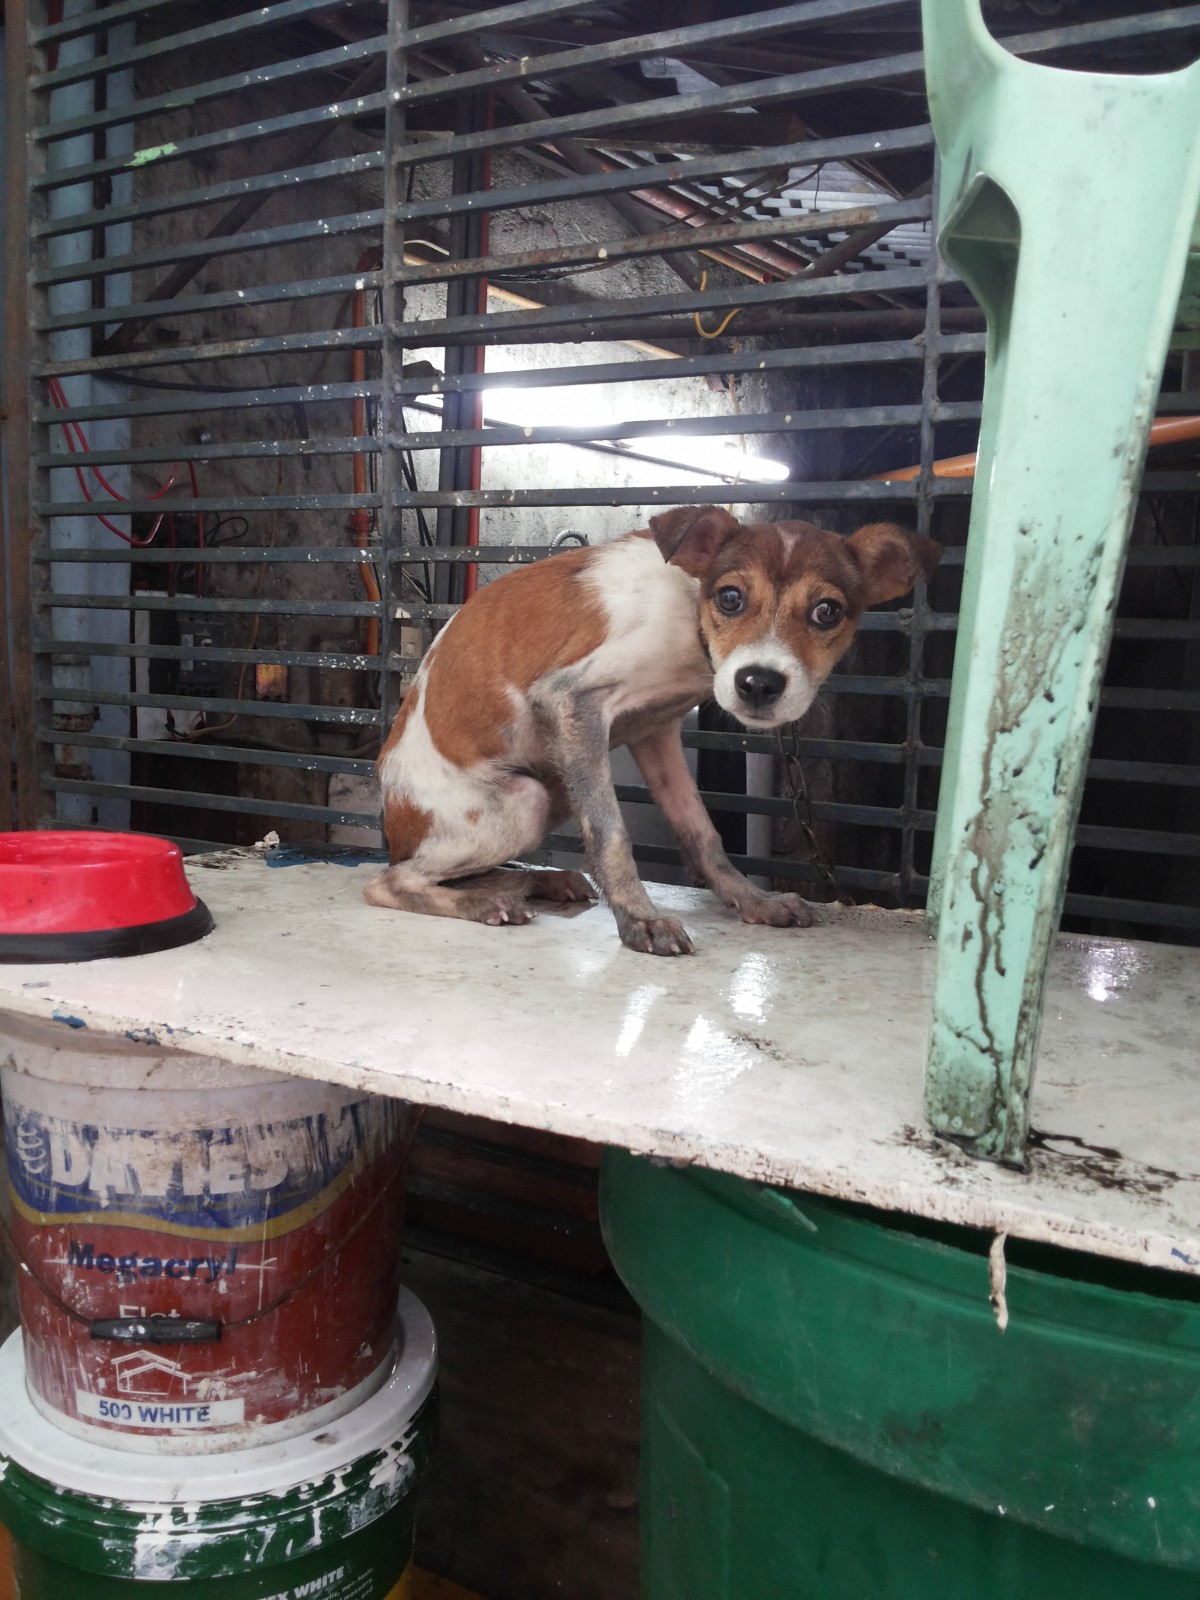 Dog in Philippines floods